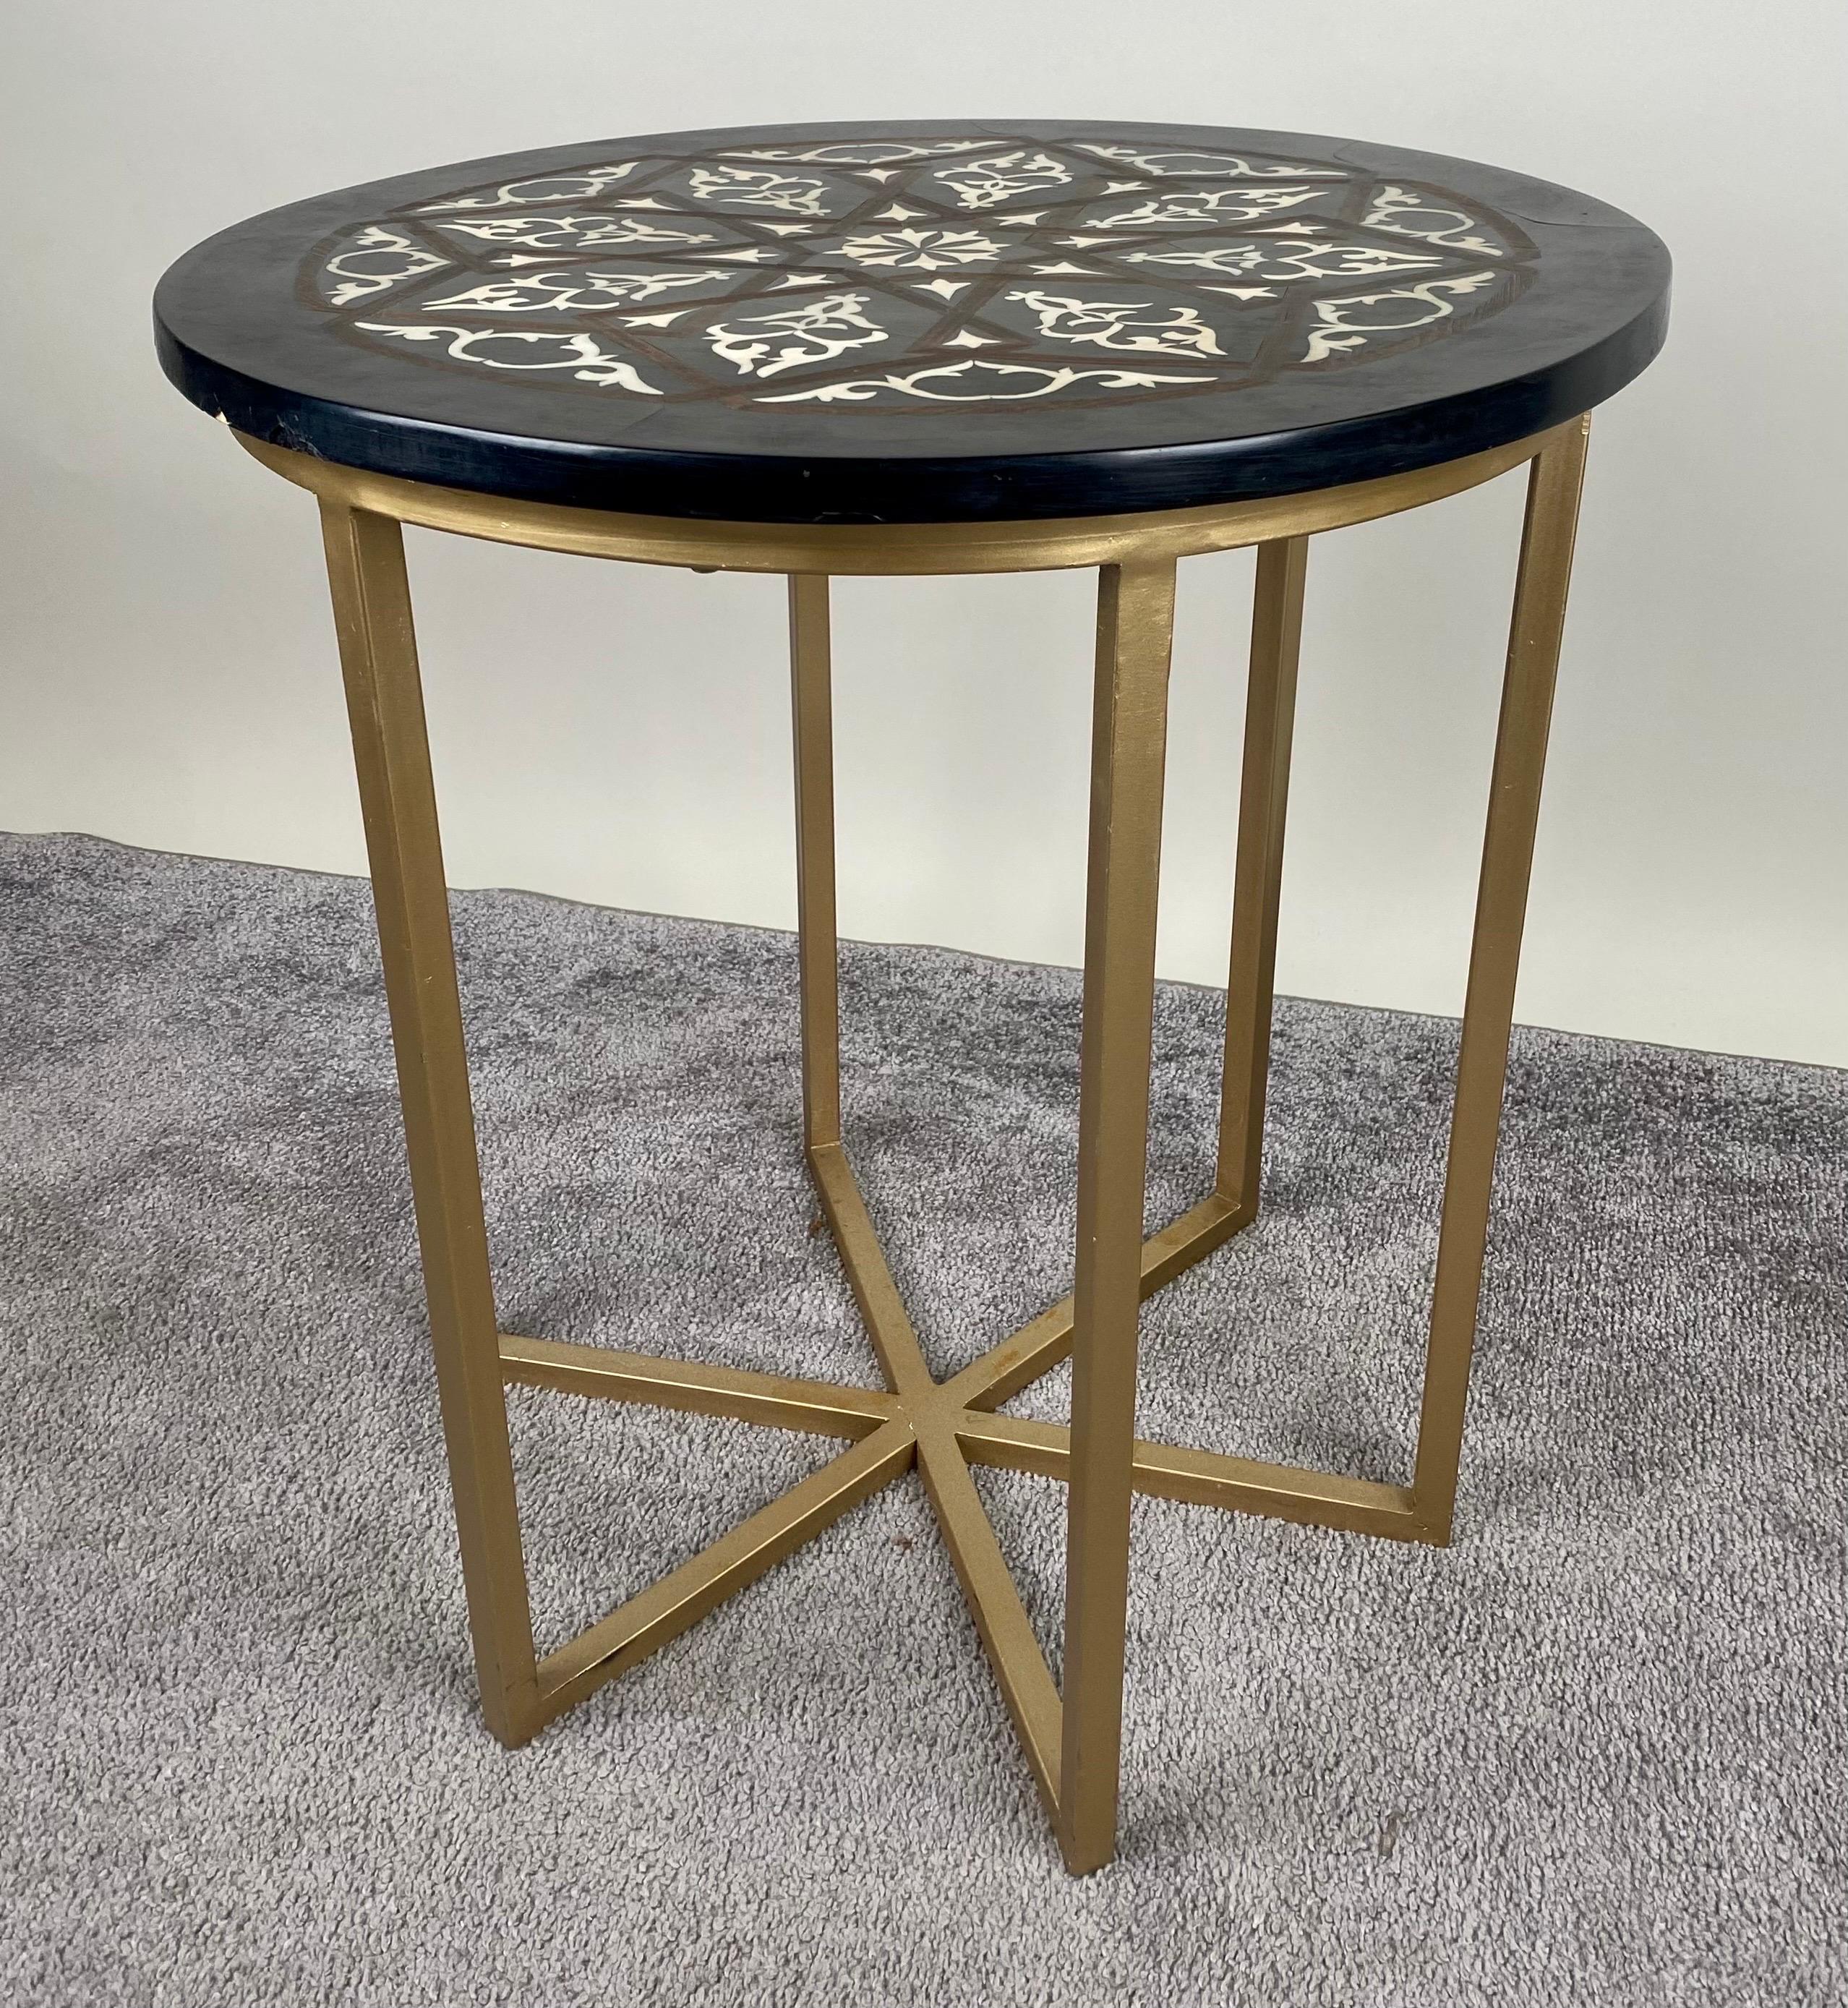 Ein schöner runder Beistelltisch im Boho Chic. Der handgefertigte Tisch bietet  ein runder schwarzer Kreisel aus Harz, der mit geometrischen Motiven verziert ist, die an das zeitlose maurische Design erinnern. Die Platte wird von einem sechsbeinigen